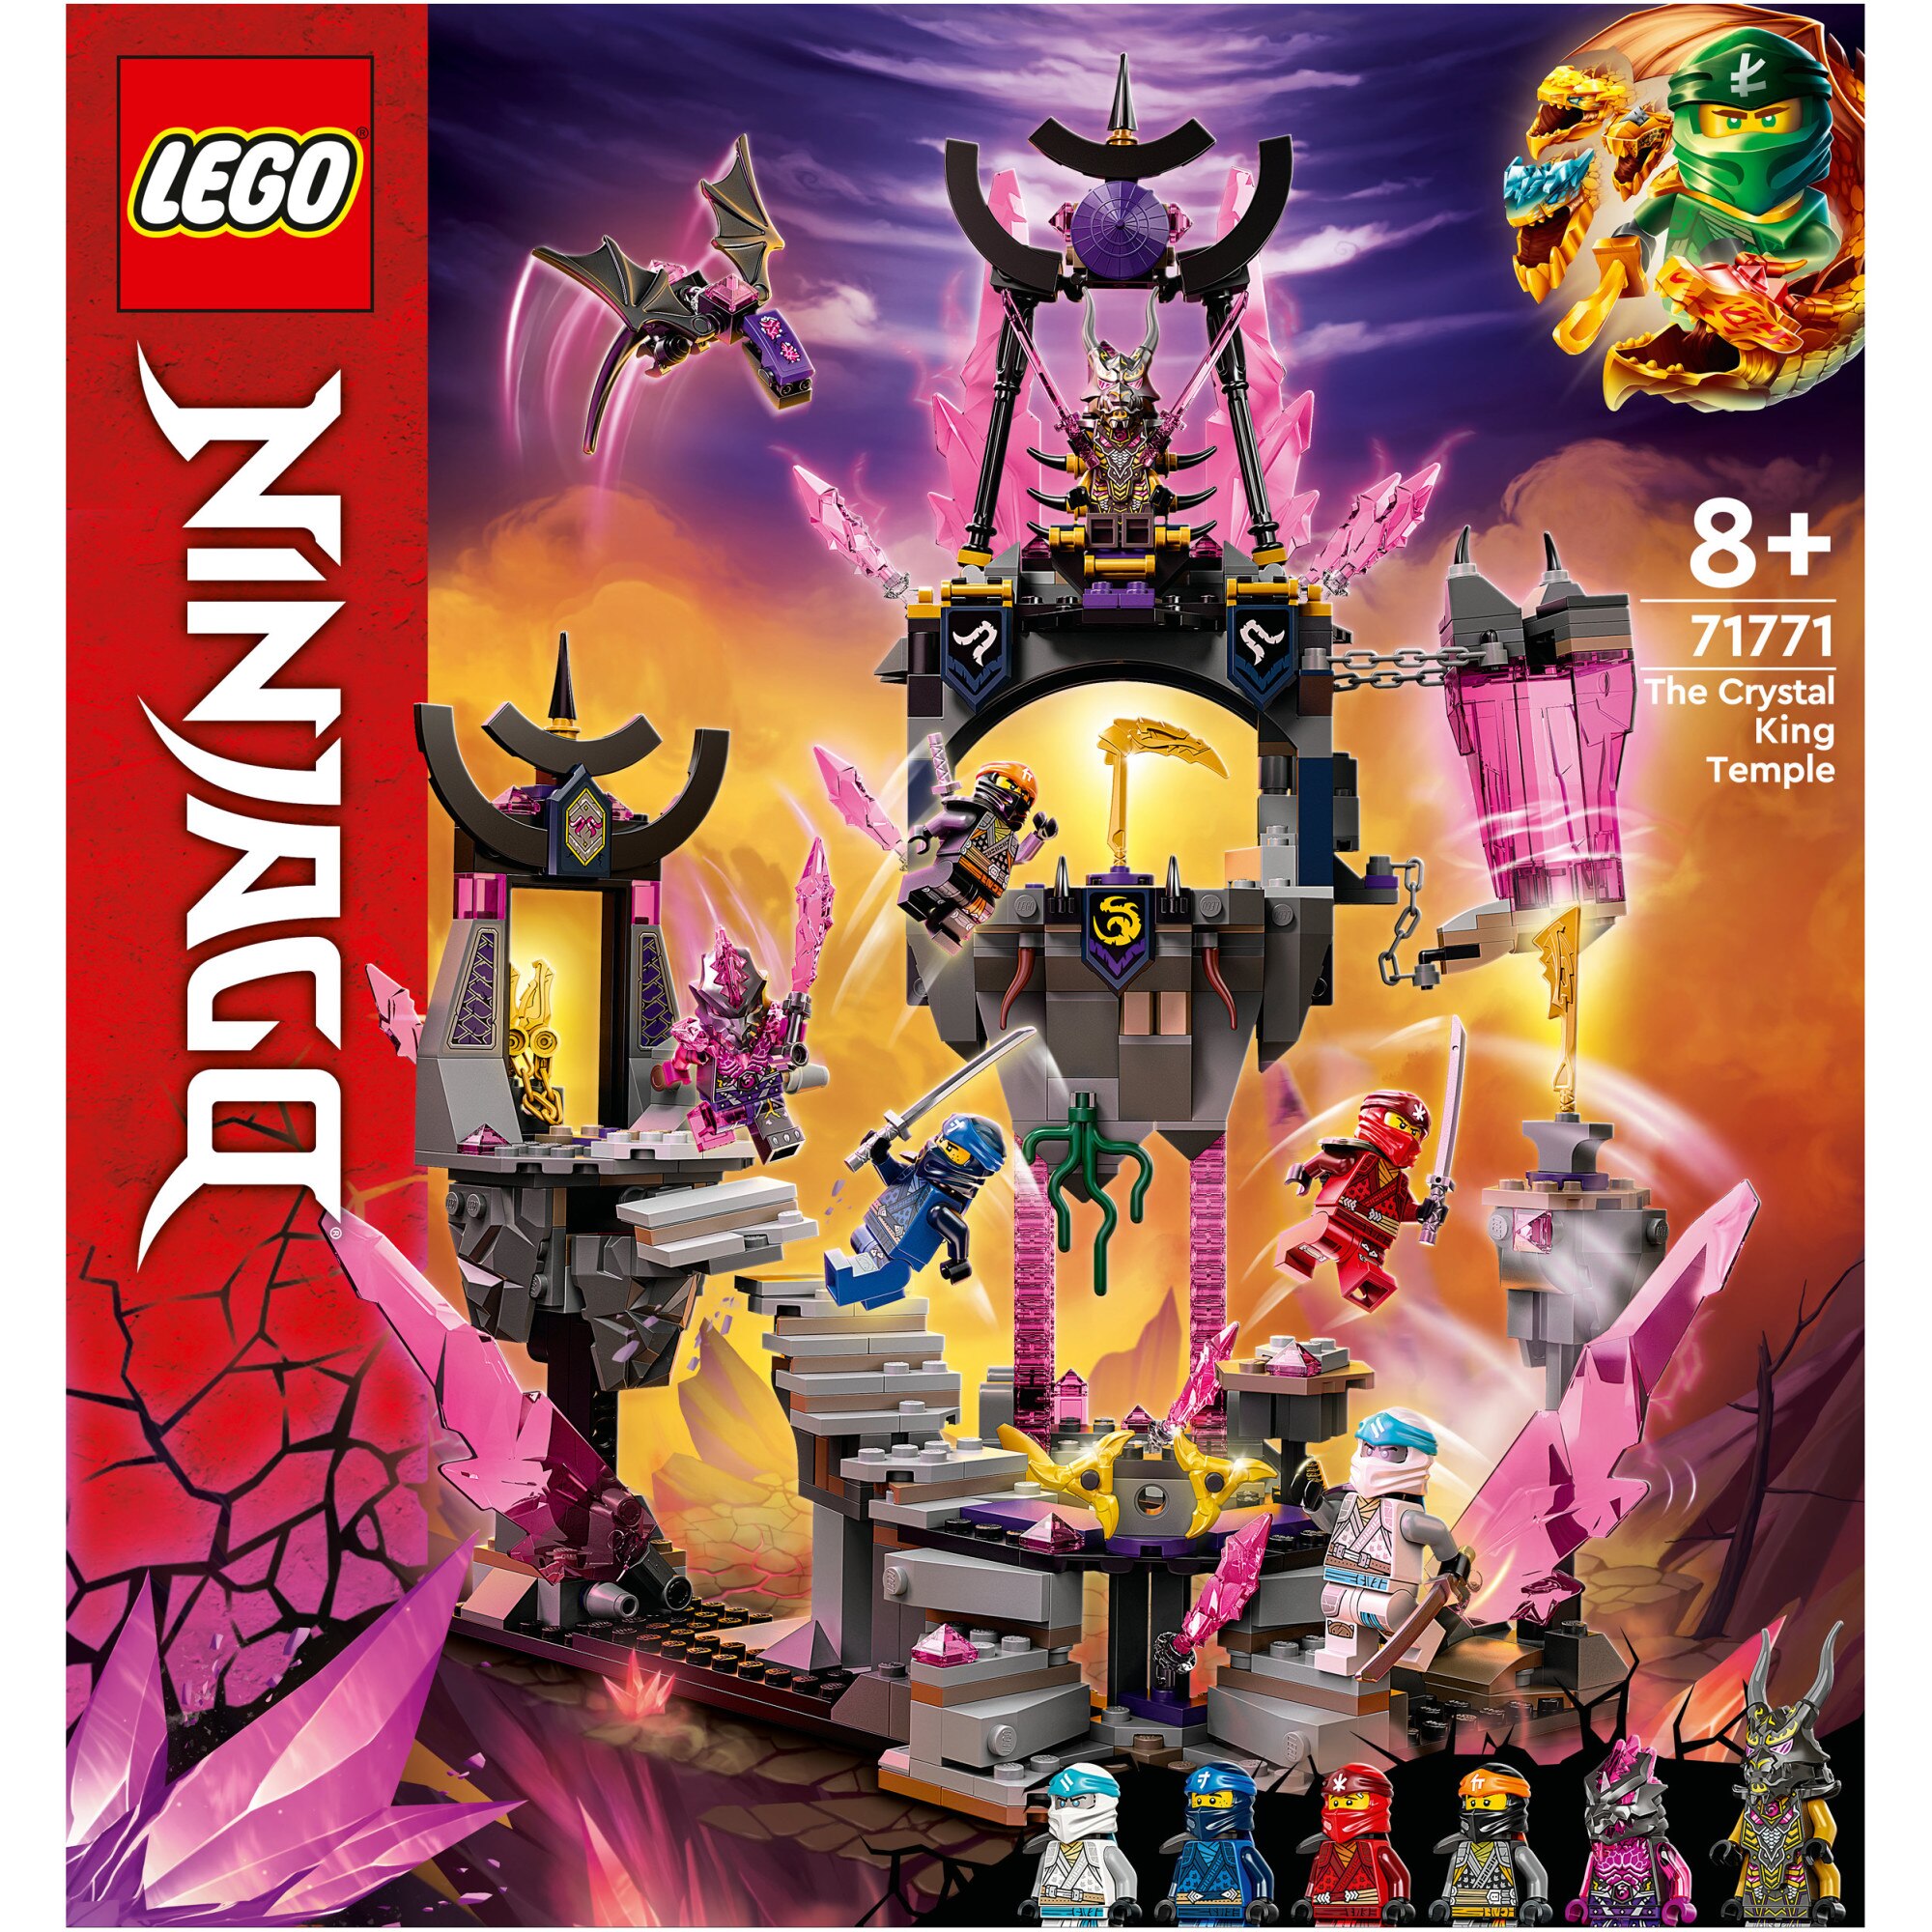 Fotografie LEGO® NINJAGO® - Templul regelui Cristal 71771, 703 piese